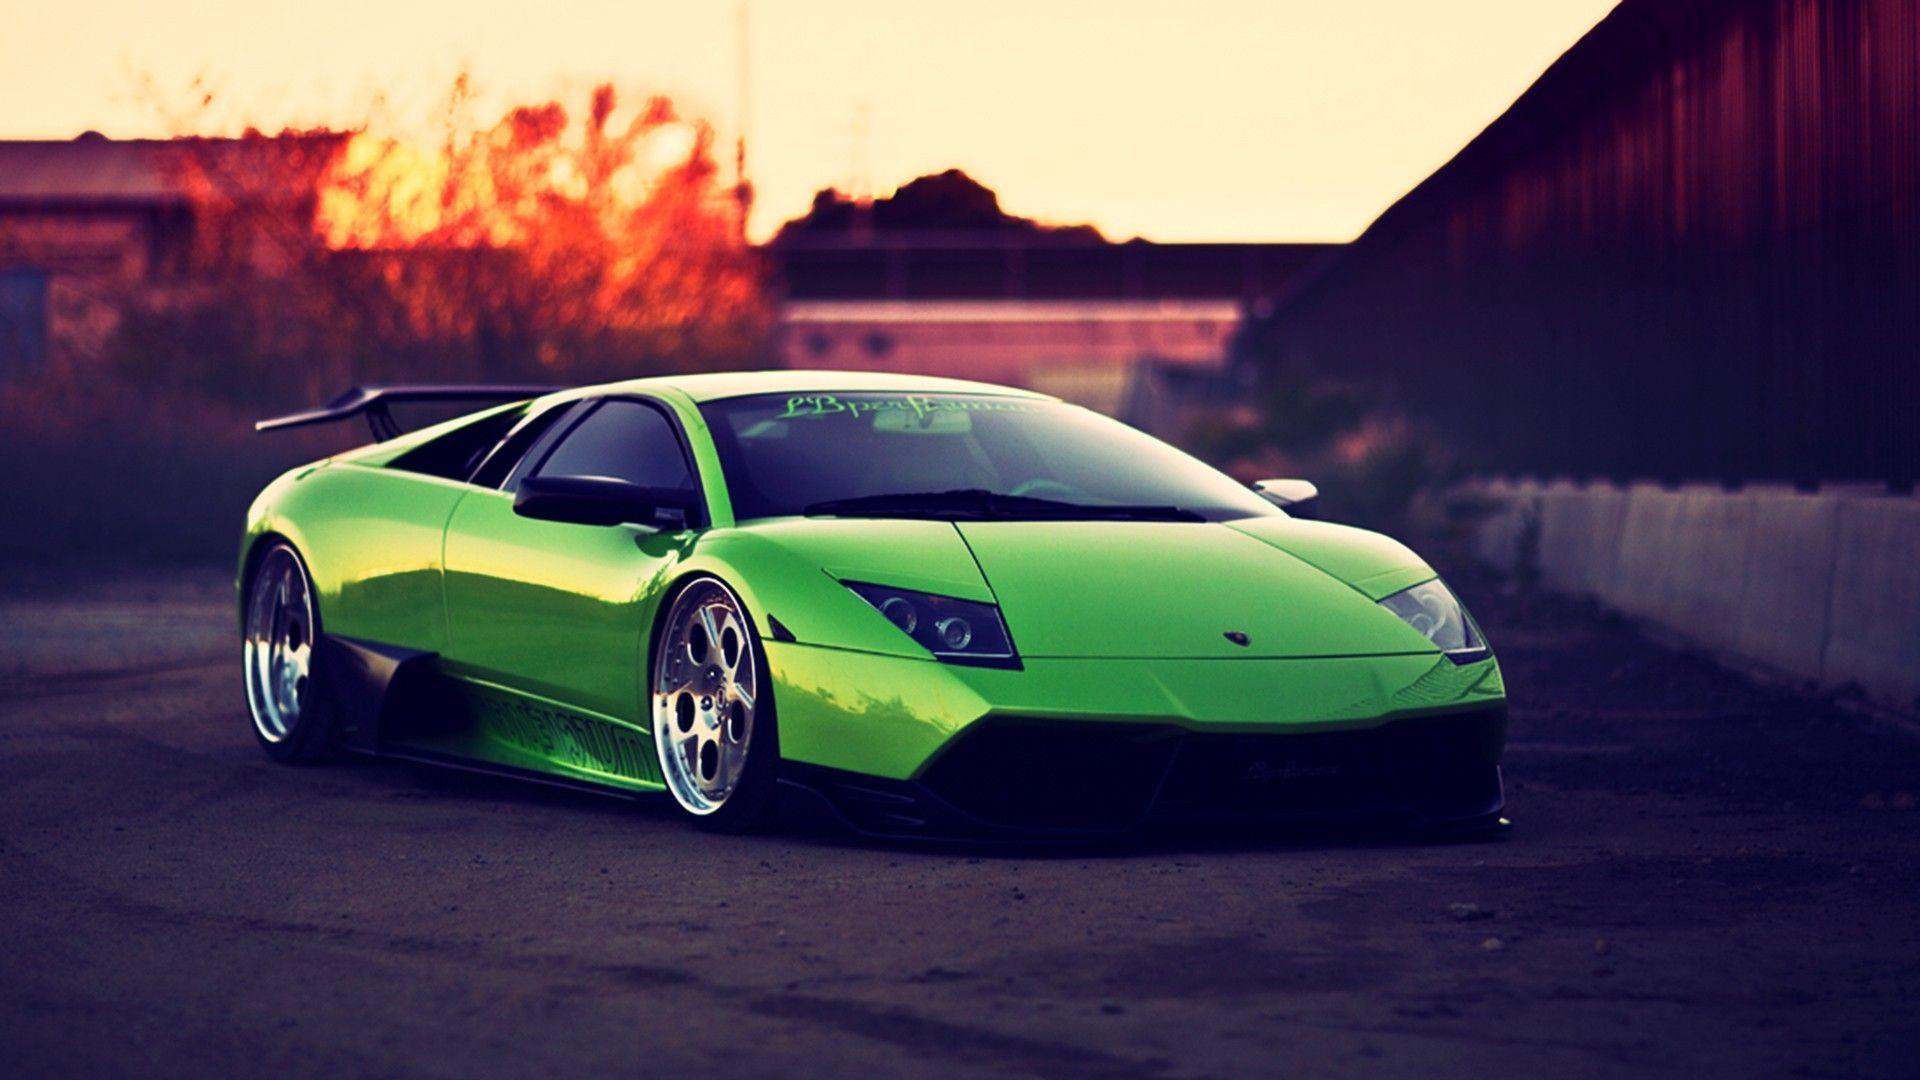 Bạn đang tìm kiếm một chiếc Lamborghini huyền thoại? Hãy xem hình ảnh và thỏa mãn niềm đam mê của mình với một chiếc xanh lá cây - một màu sắc rực rỡ đầy sức mạnh. Điều đó sẽ khiến bạn cảm thấy như đang lái chiếc xe này trên đường phố sầm uất.